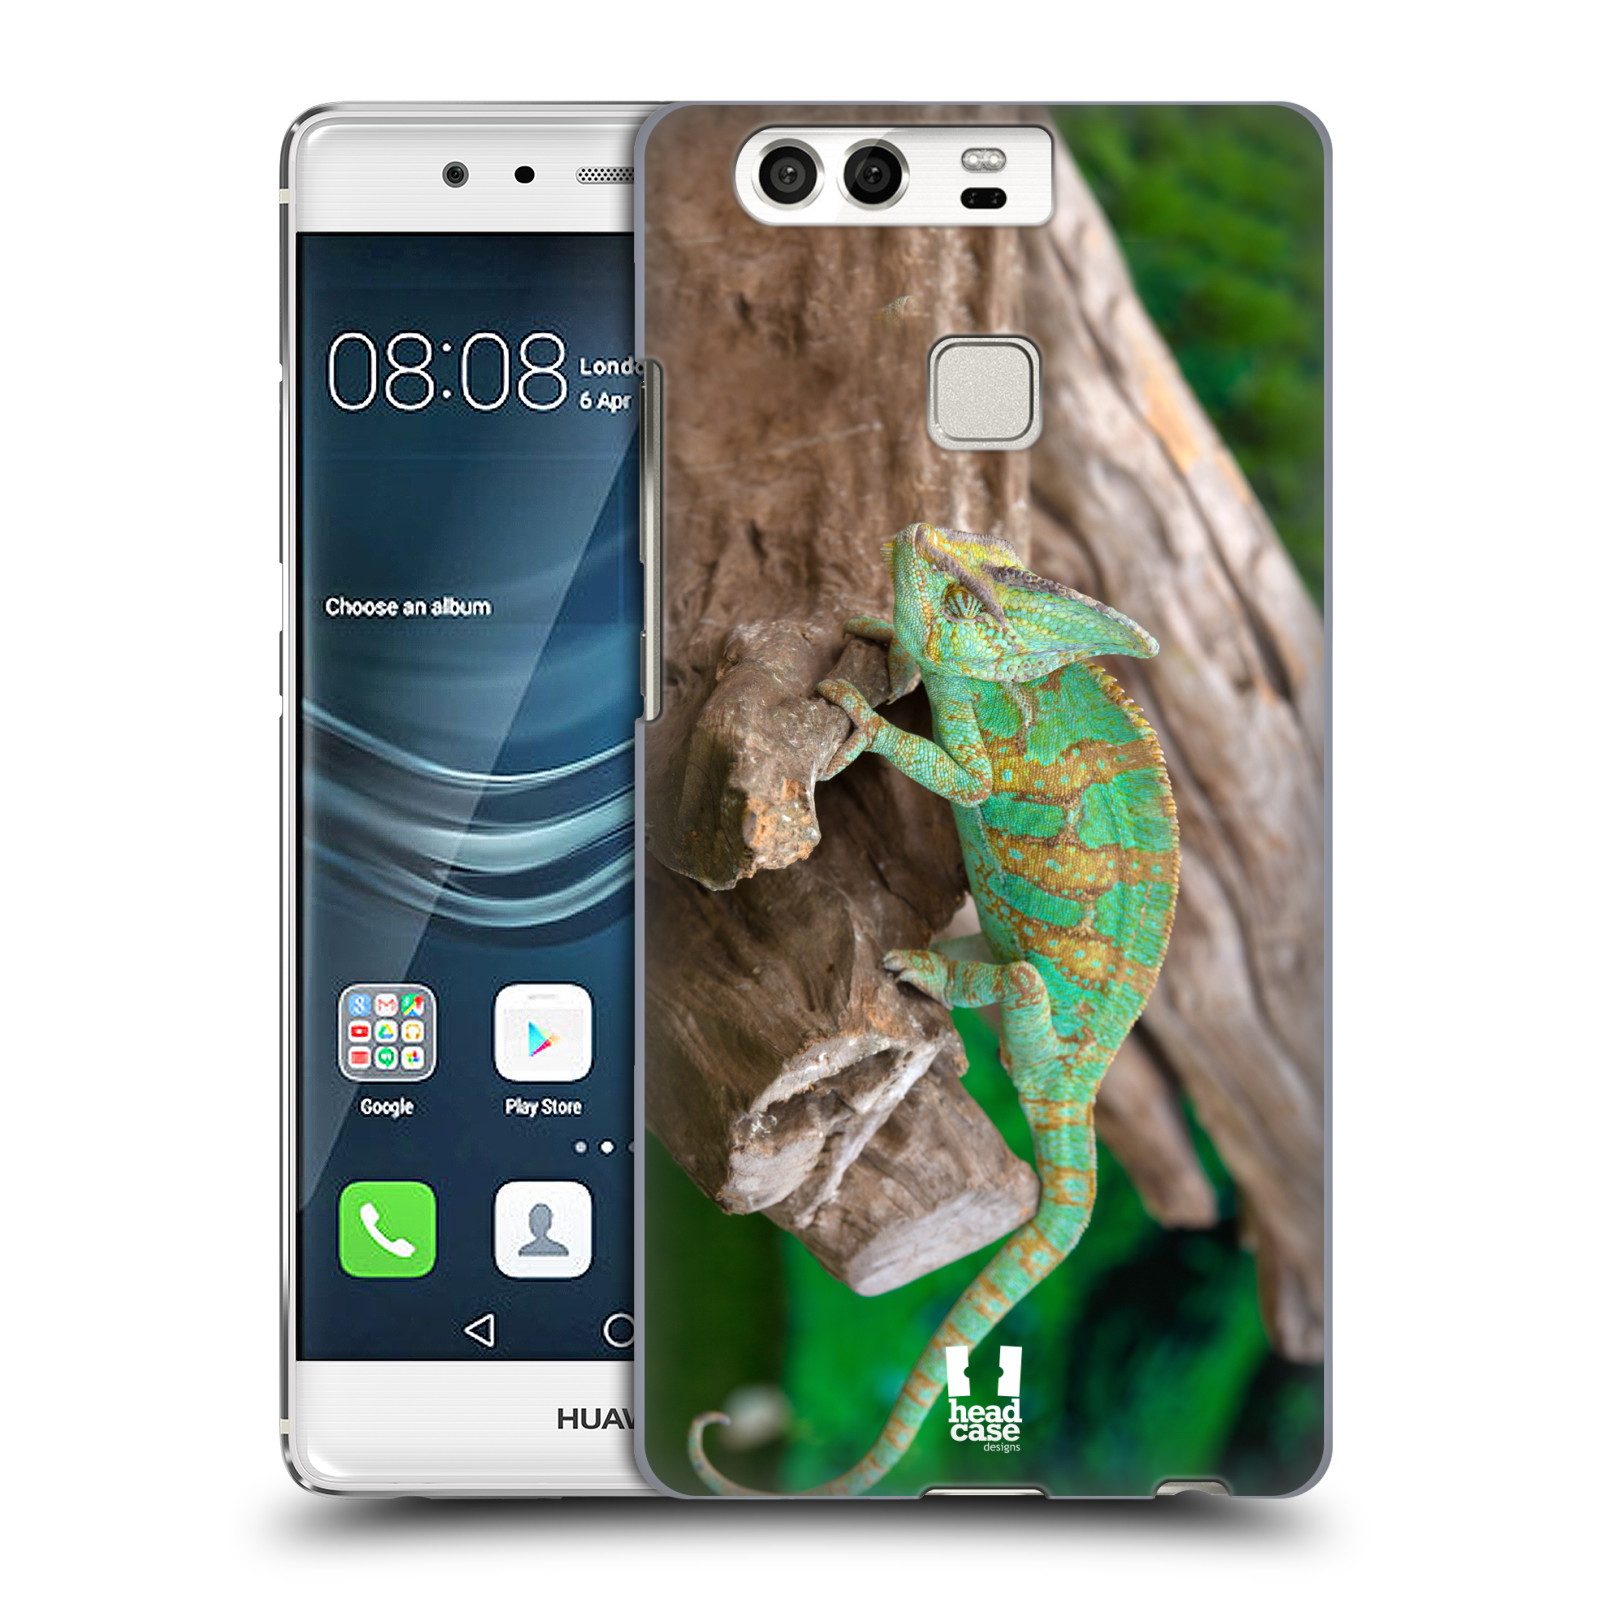 HEAD CASE plastový obal na mobil Huawei P9 / P9 DUAL SIM vzor slavná zvířata foto chameleon